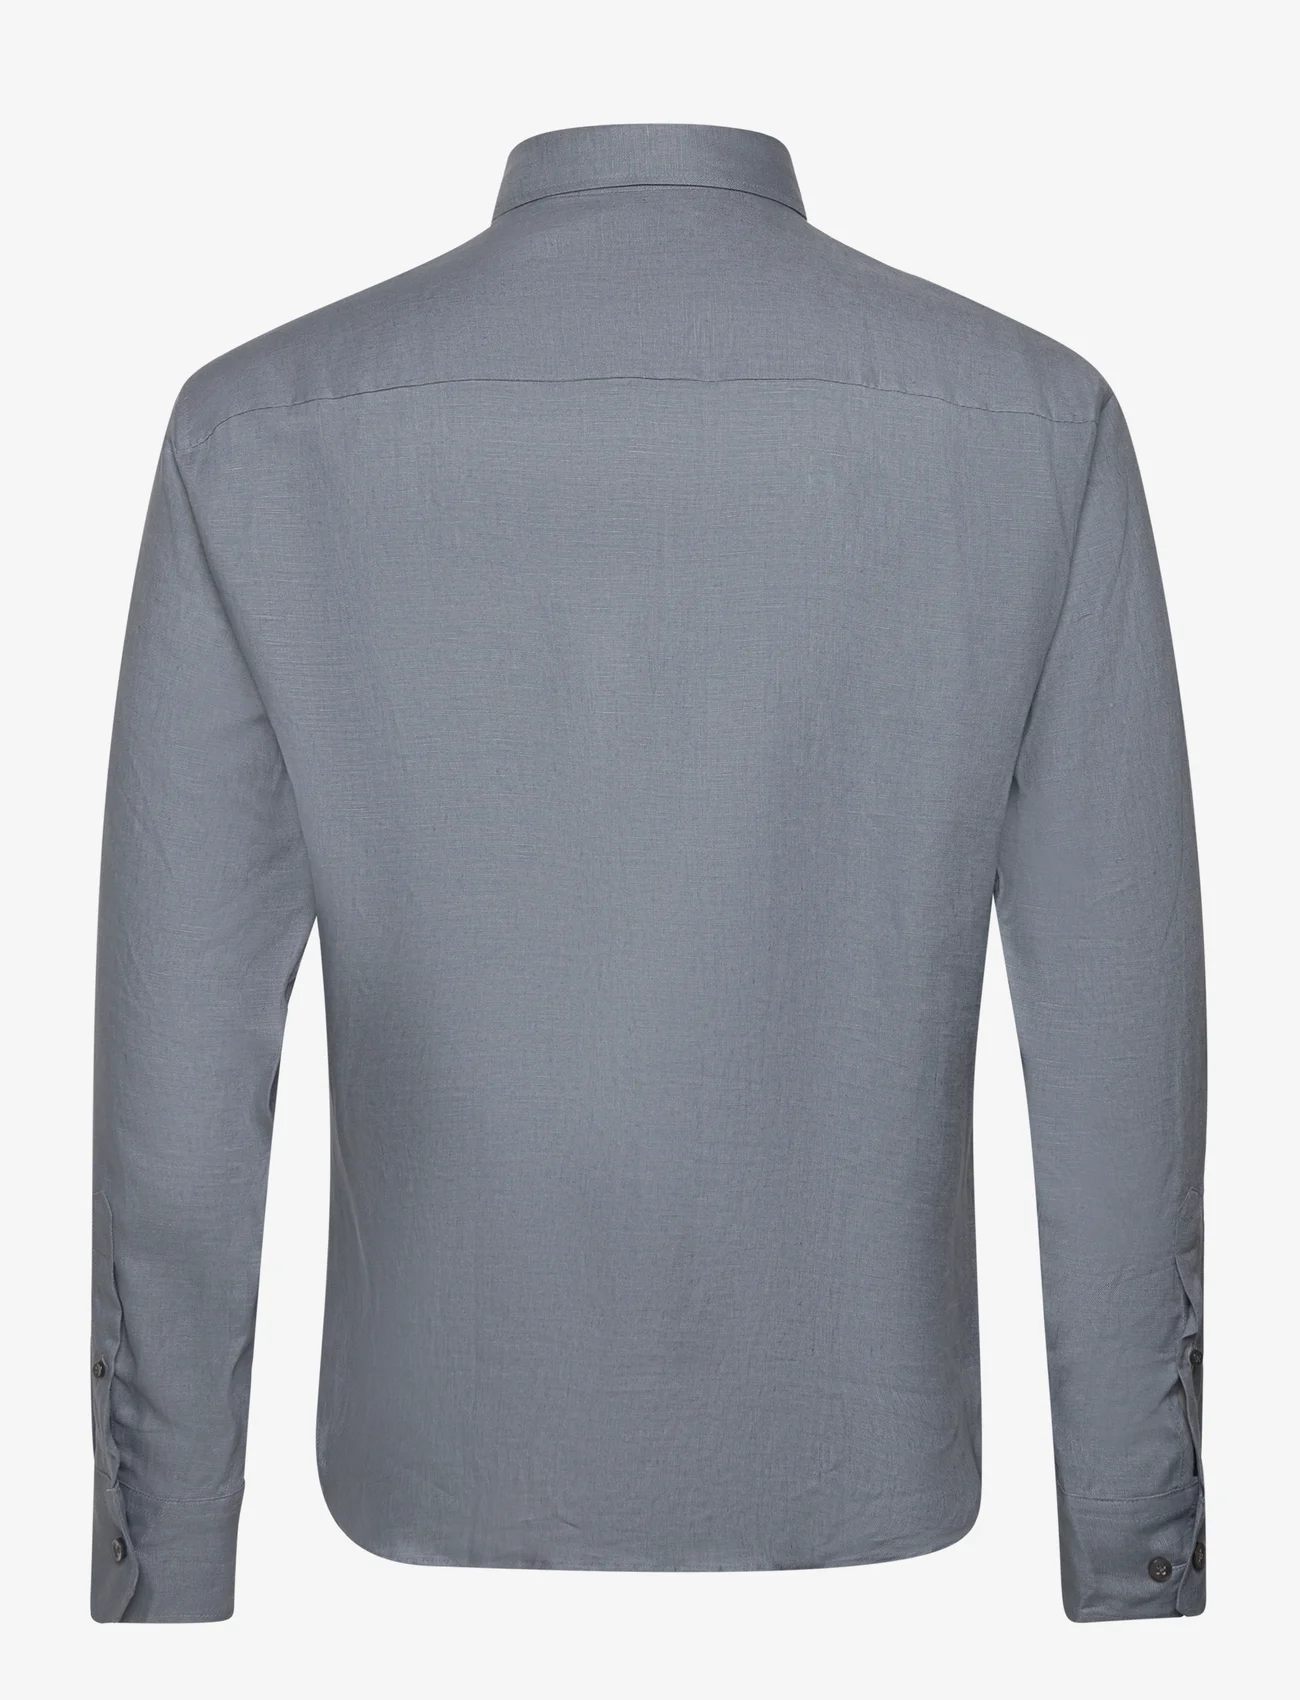 Bosweel Shirts Est. 1937 - Regular fit Men shirt - linskjorter - grey - 1